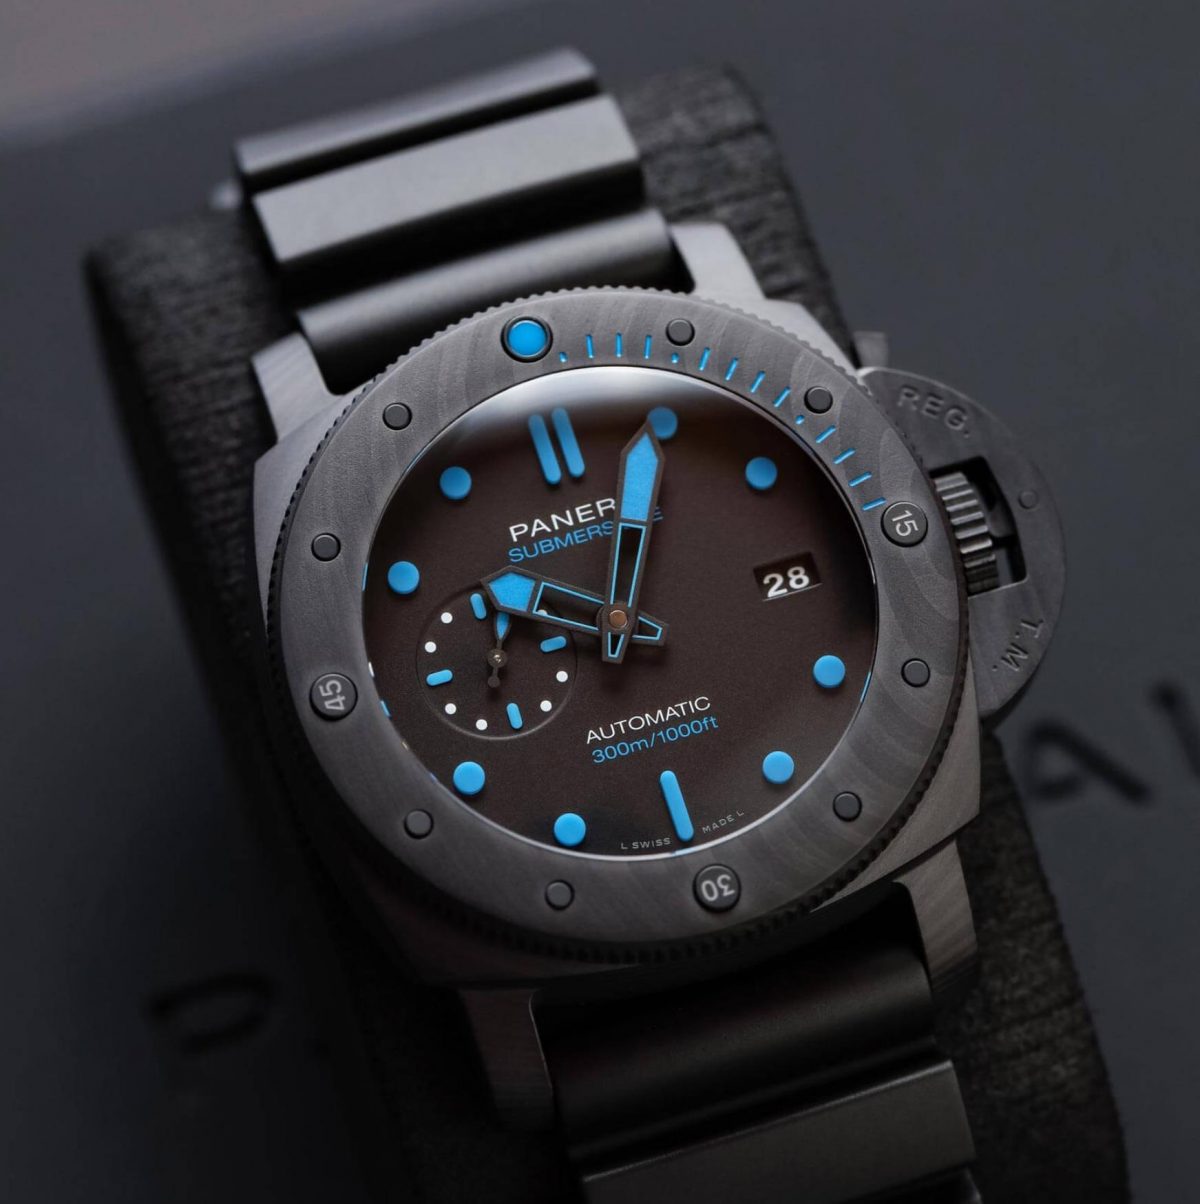 The waterproof fake watch has a date window.